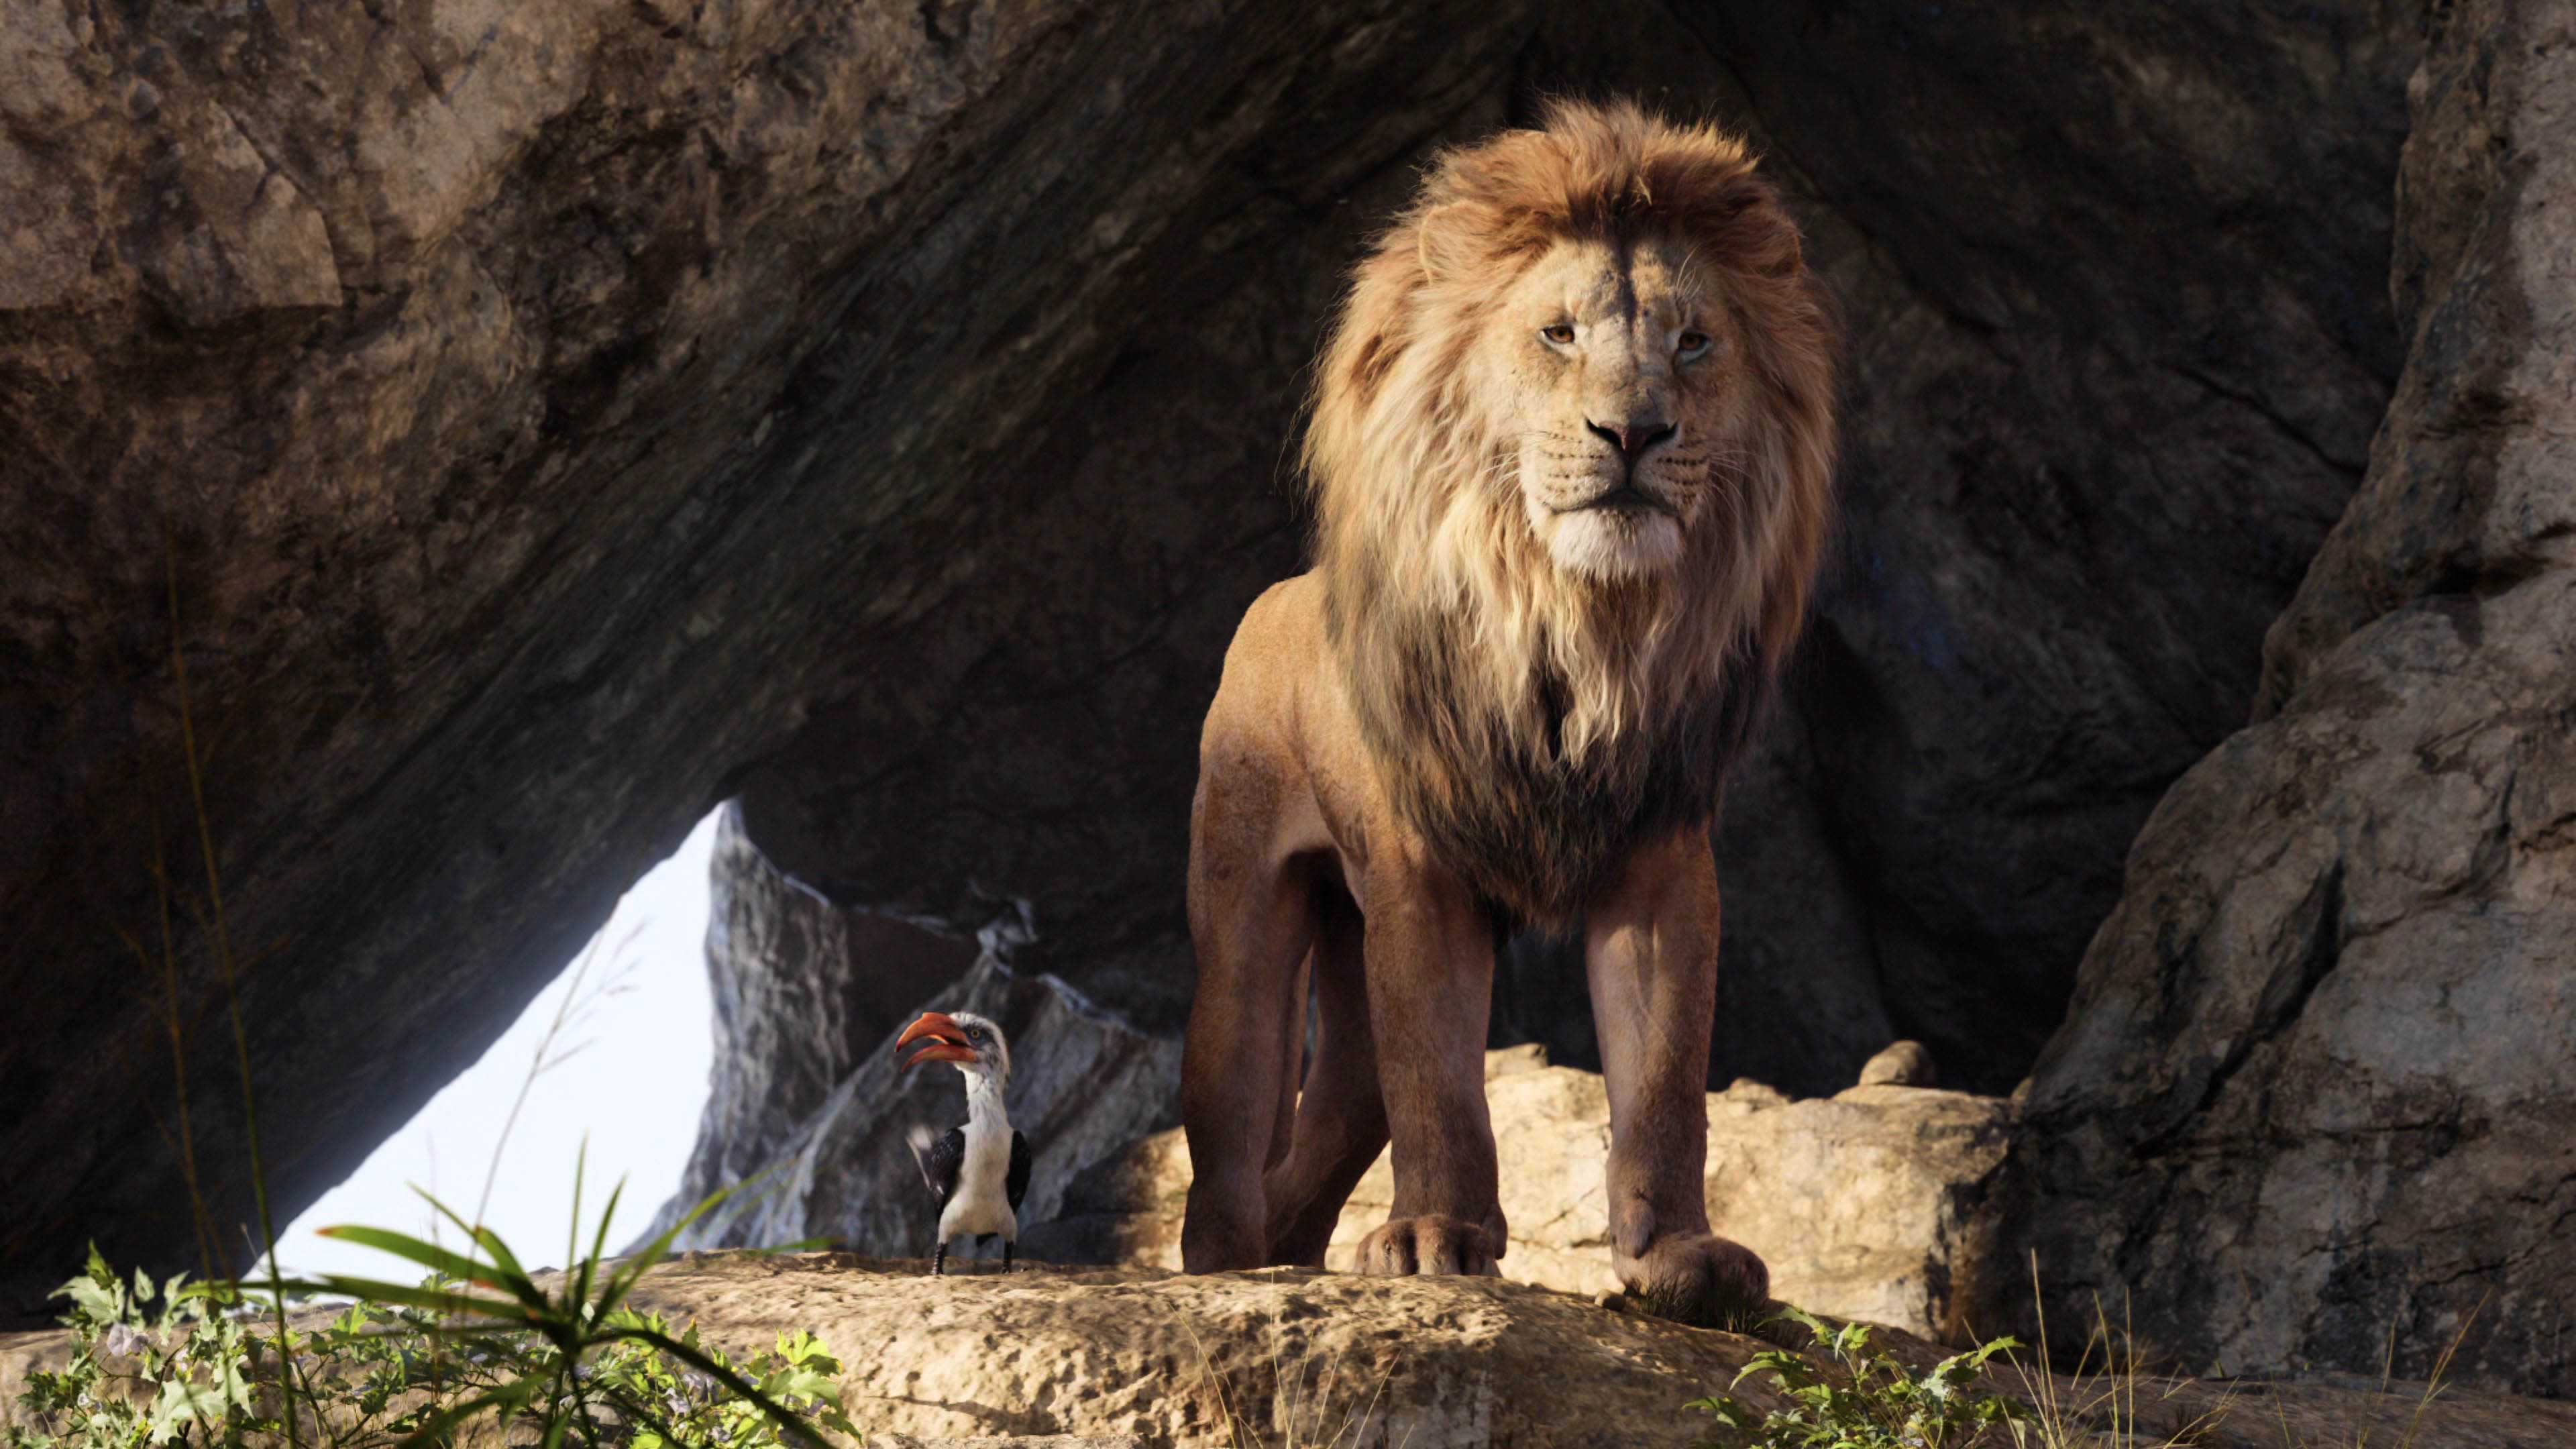 Дата выхода продолжения фильма "король лев 2" в 2019 году